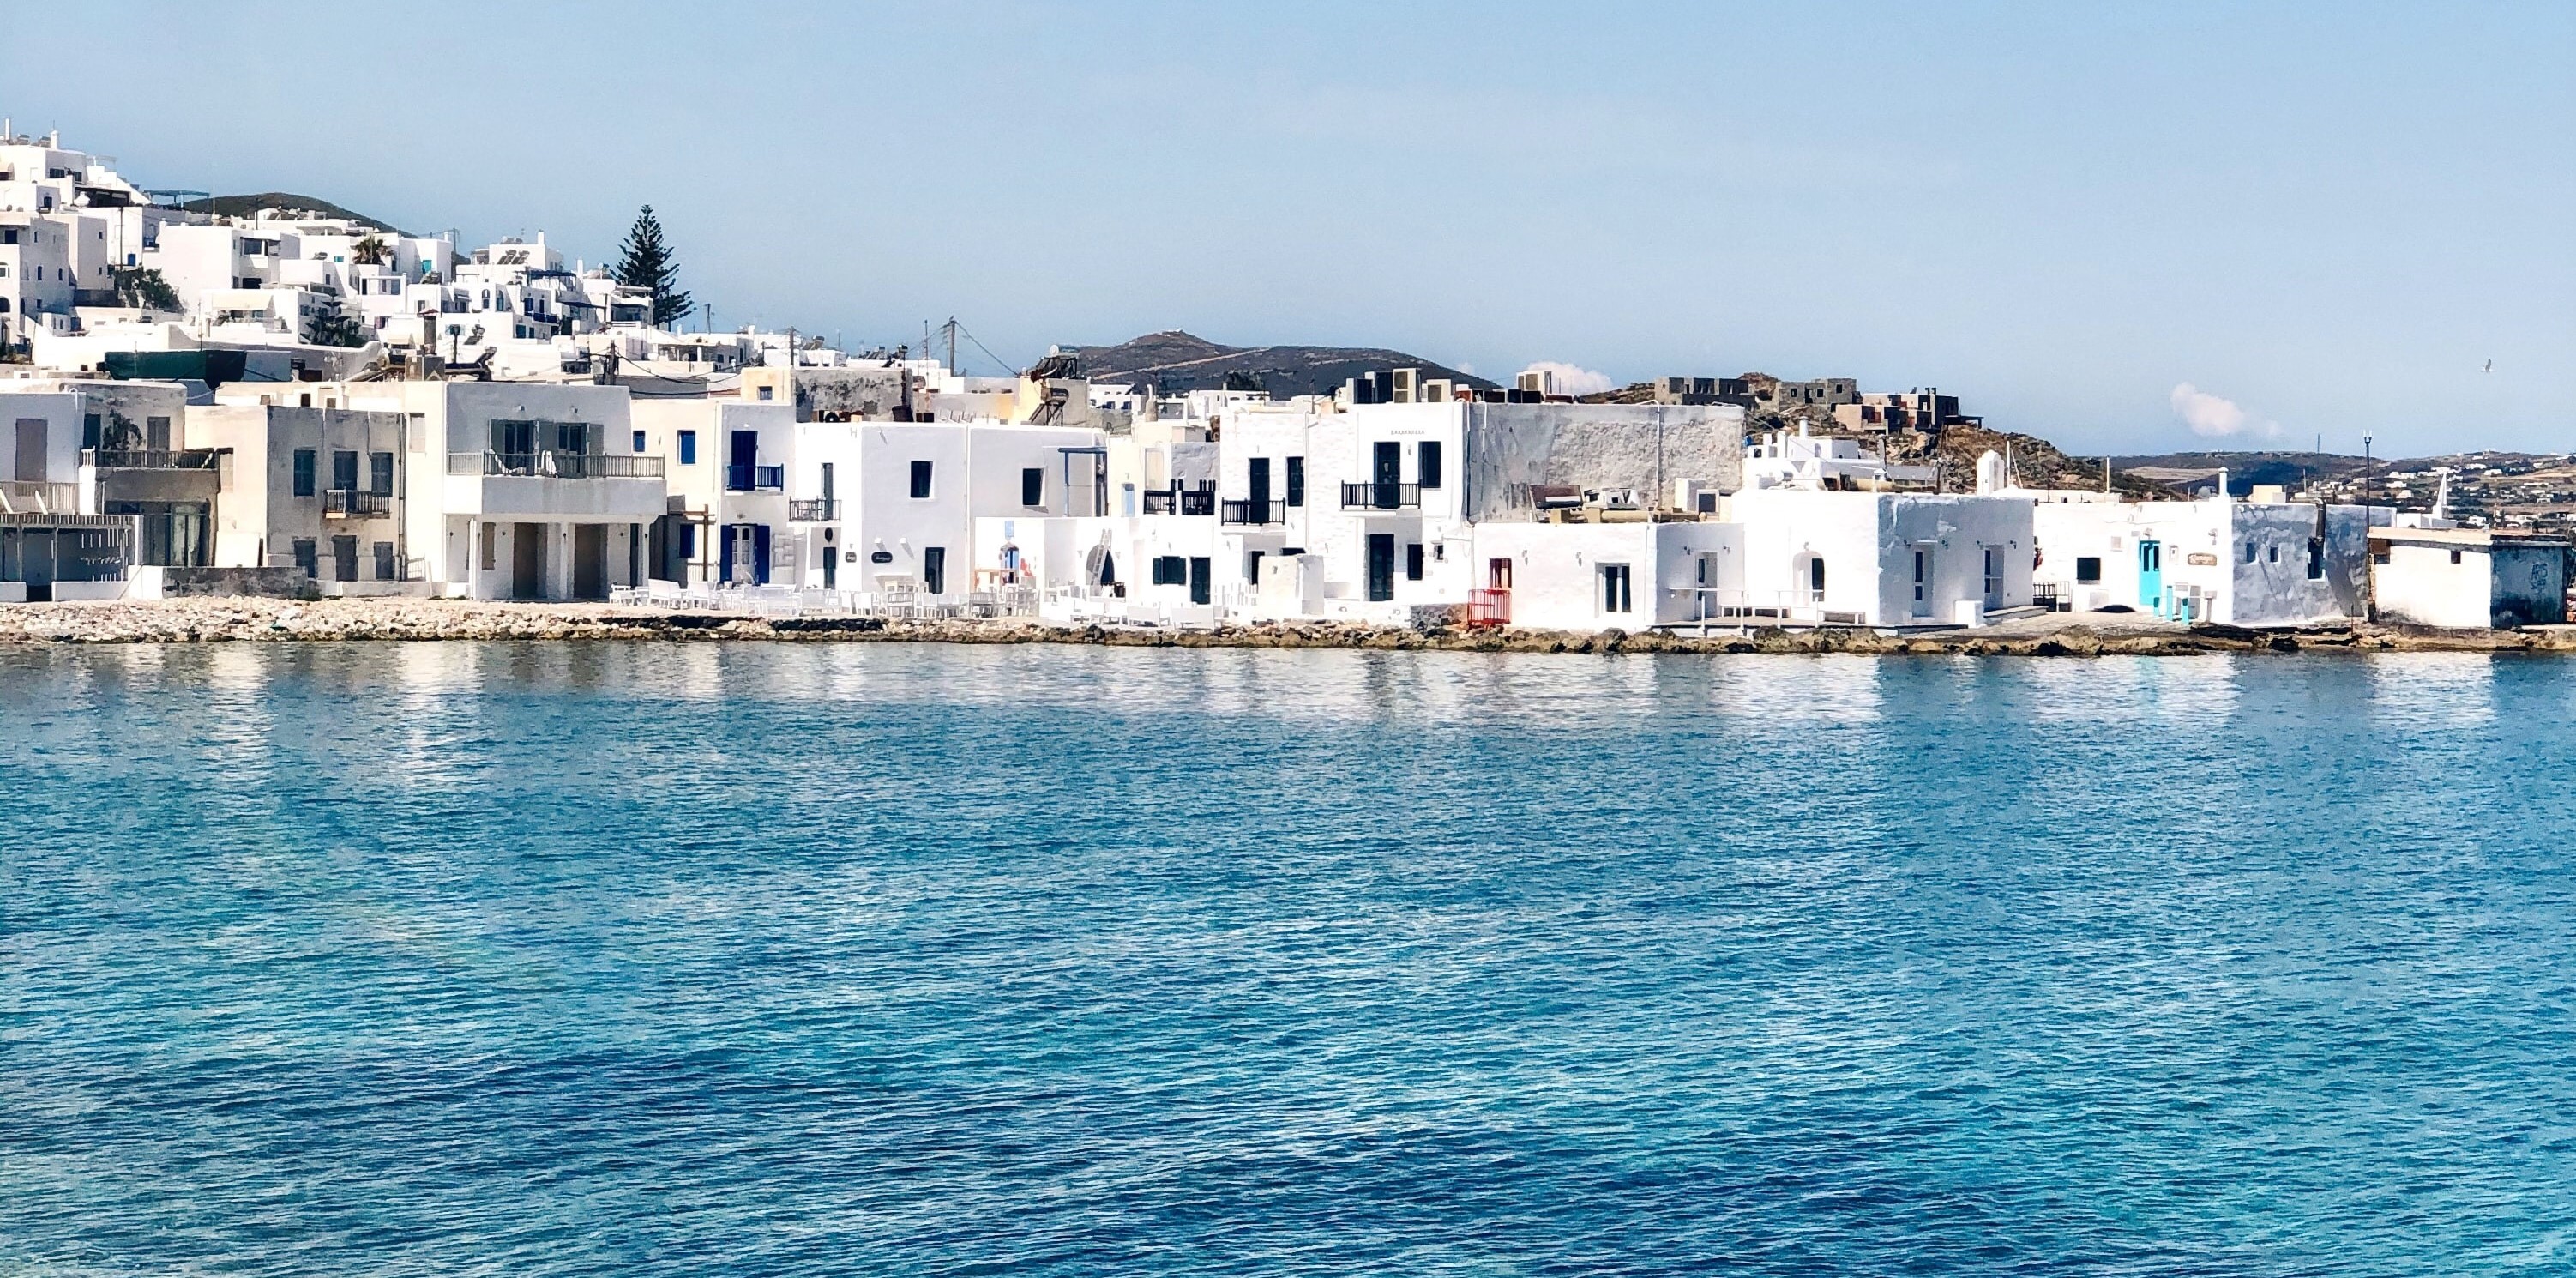 BeFree Flotilla Greece Cyclades: Athens to Mykonos